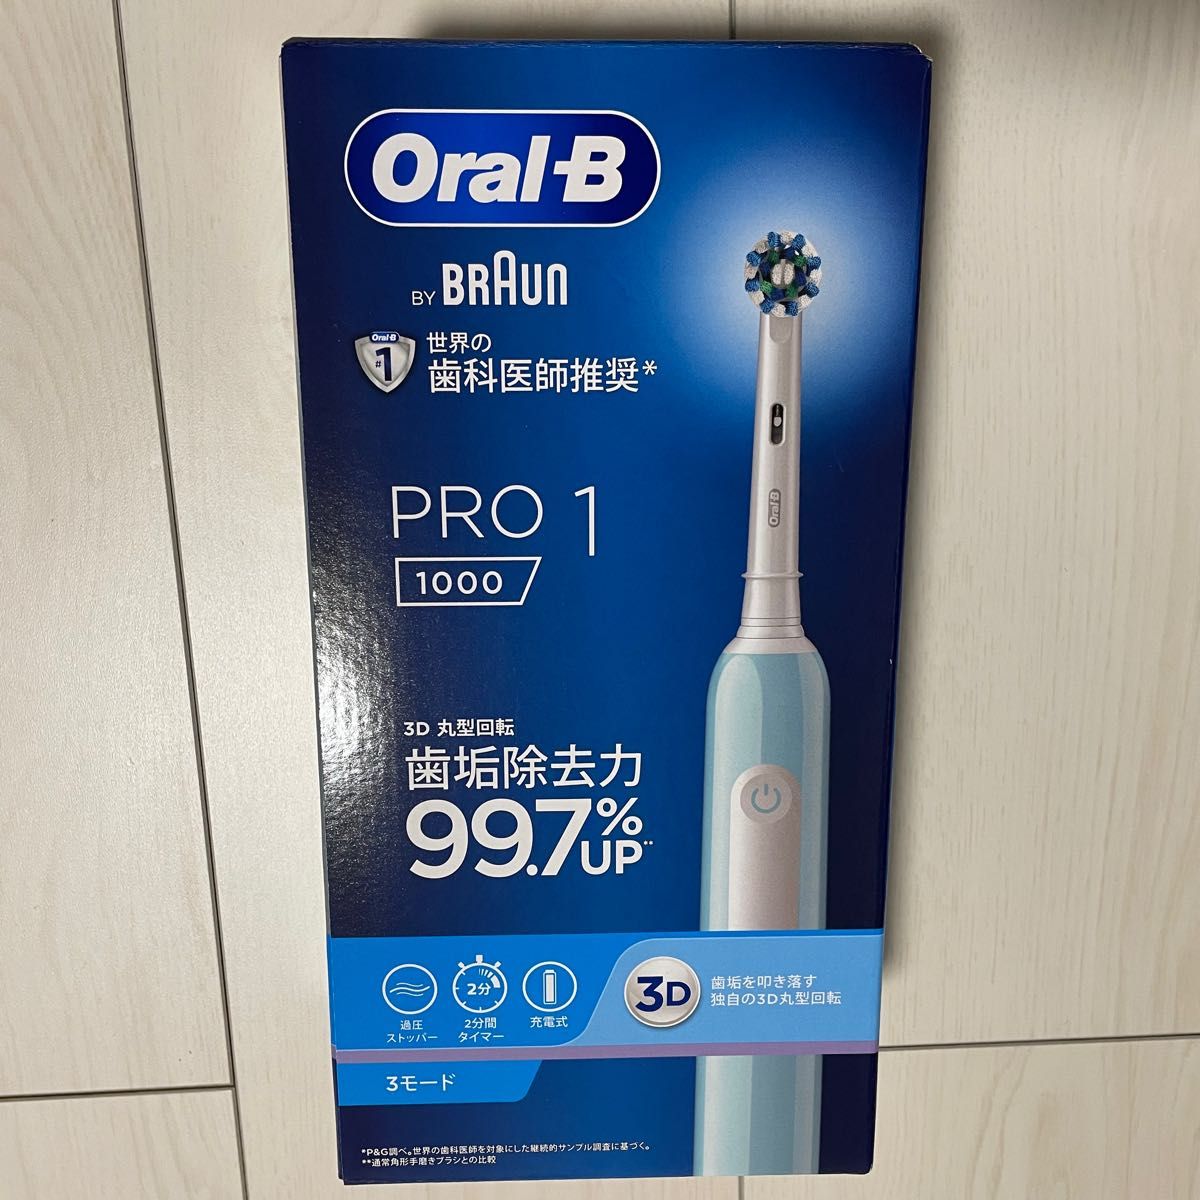 【最終値下げ中】 Oral-B オーラルB by BRAUN PRO1 1000 電動歯ブラシ 